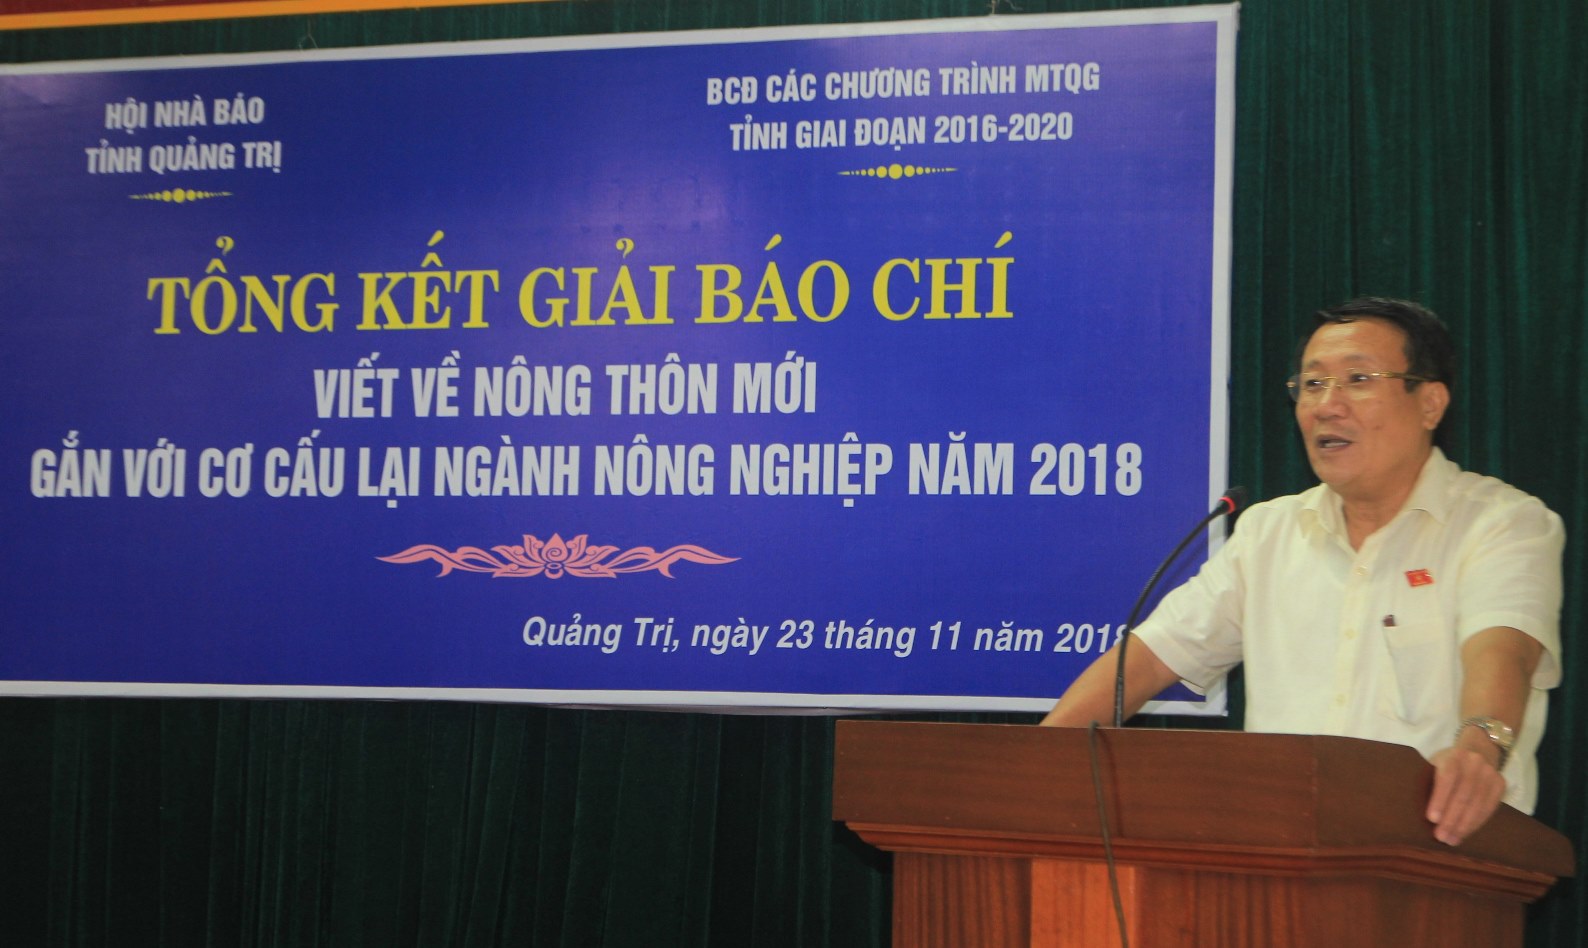 Phó Chủ tịch UBND tỉnh Quảng Trị Hà Sỹ Đồng phát biểu tại buổi lễ